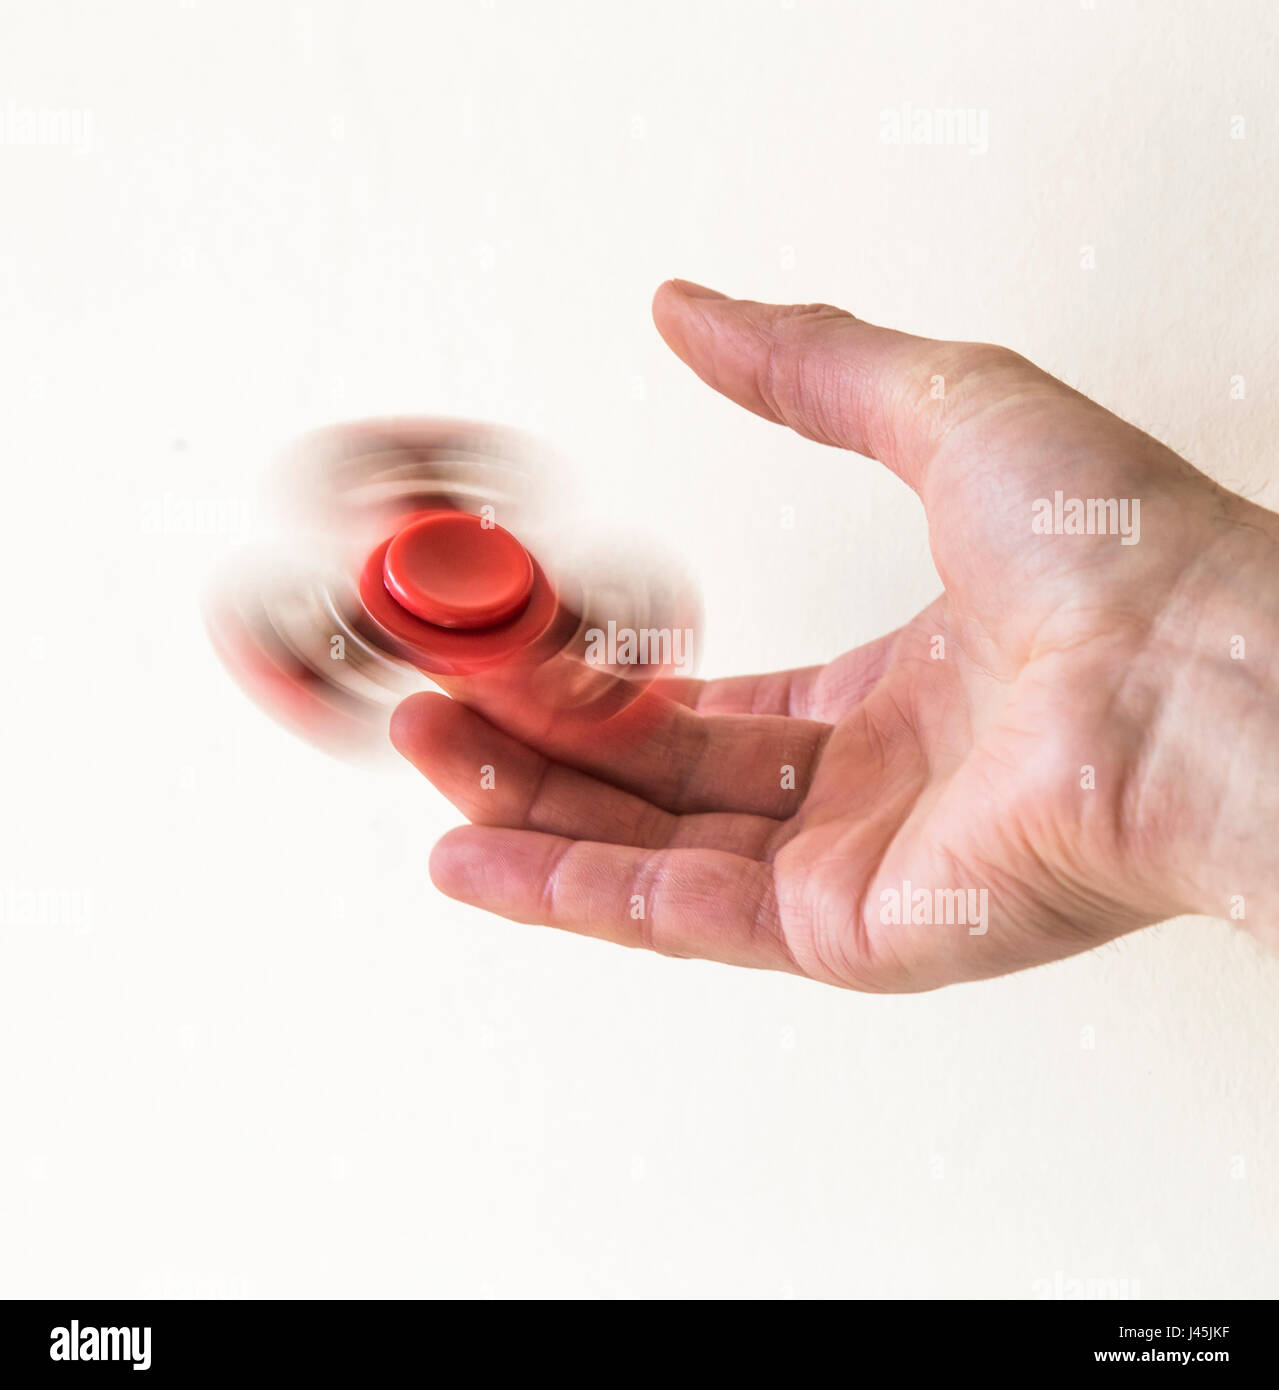 Hand spinner fidget finger toy spinning on a finger Stock Photo